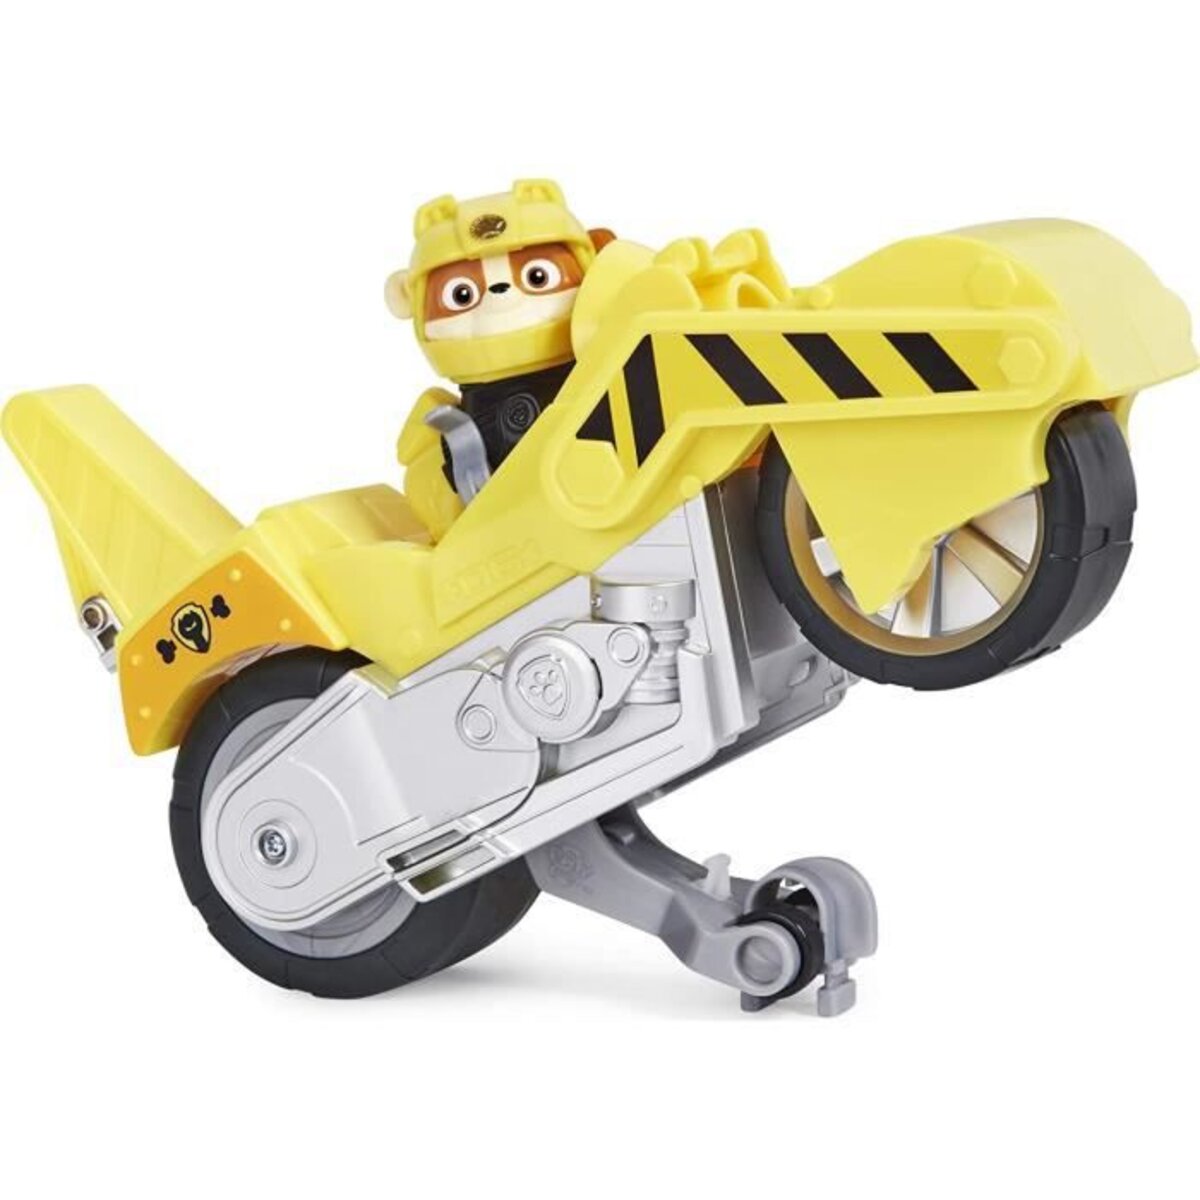 Pat patrouille - vehicule + figurine amovible chase moto pups paw patrol -  moto rétrofriction - 6061223 - jouet enfant 3 ans et + - La Poste